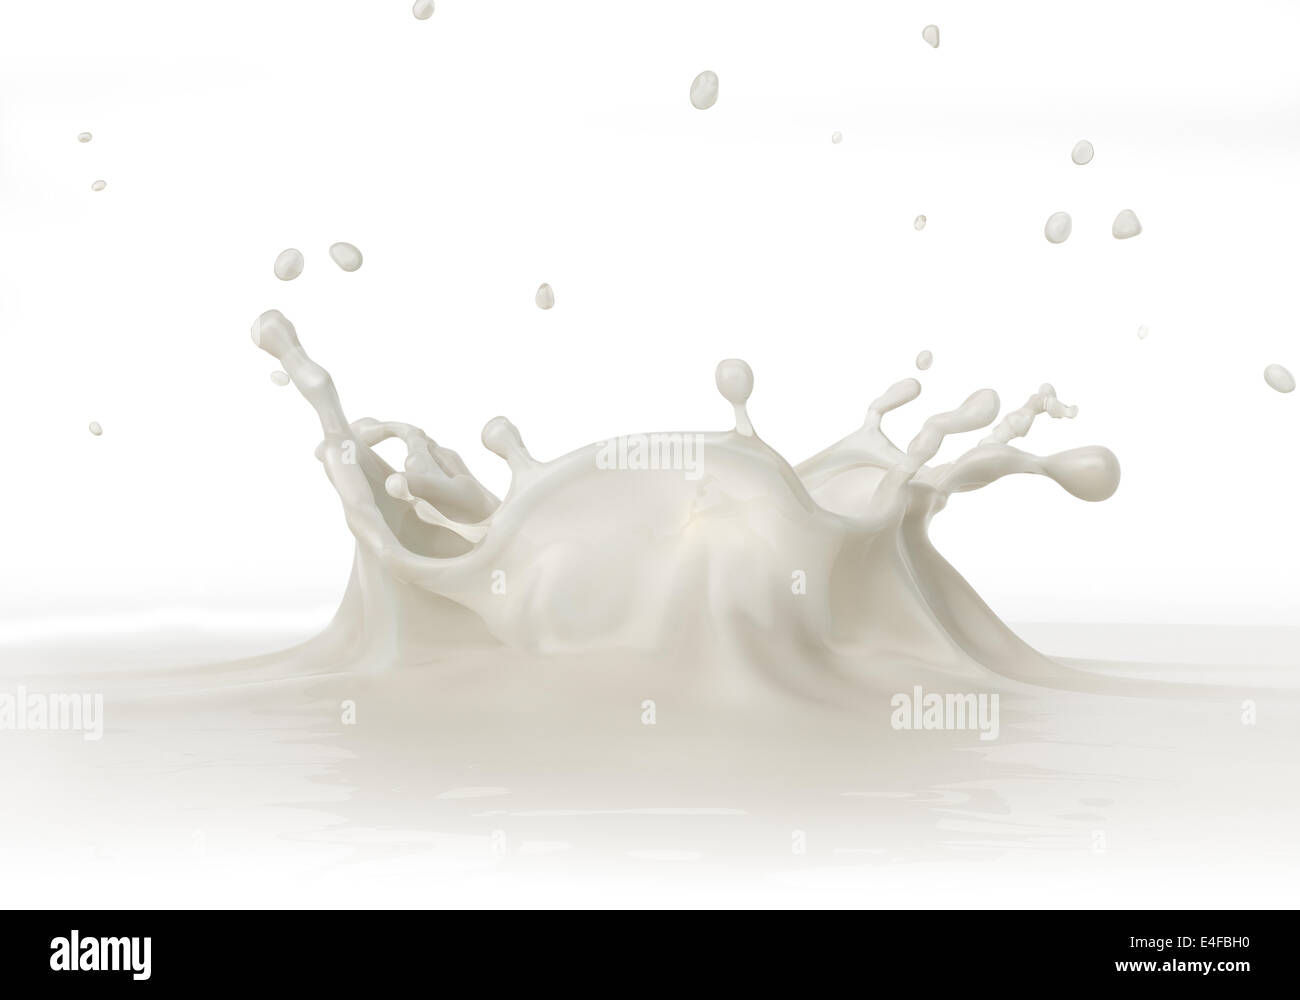 Milch Spritzen Nahaufnahme, von einer Seite betrachtet. Auf weißem Hintergrund. Clipping-Pfad enthalten. Stockfoto